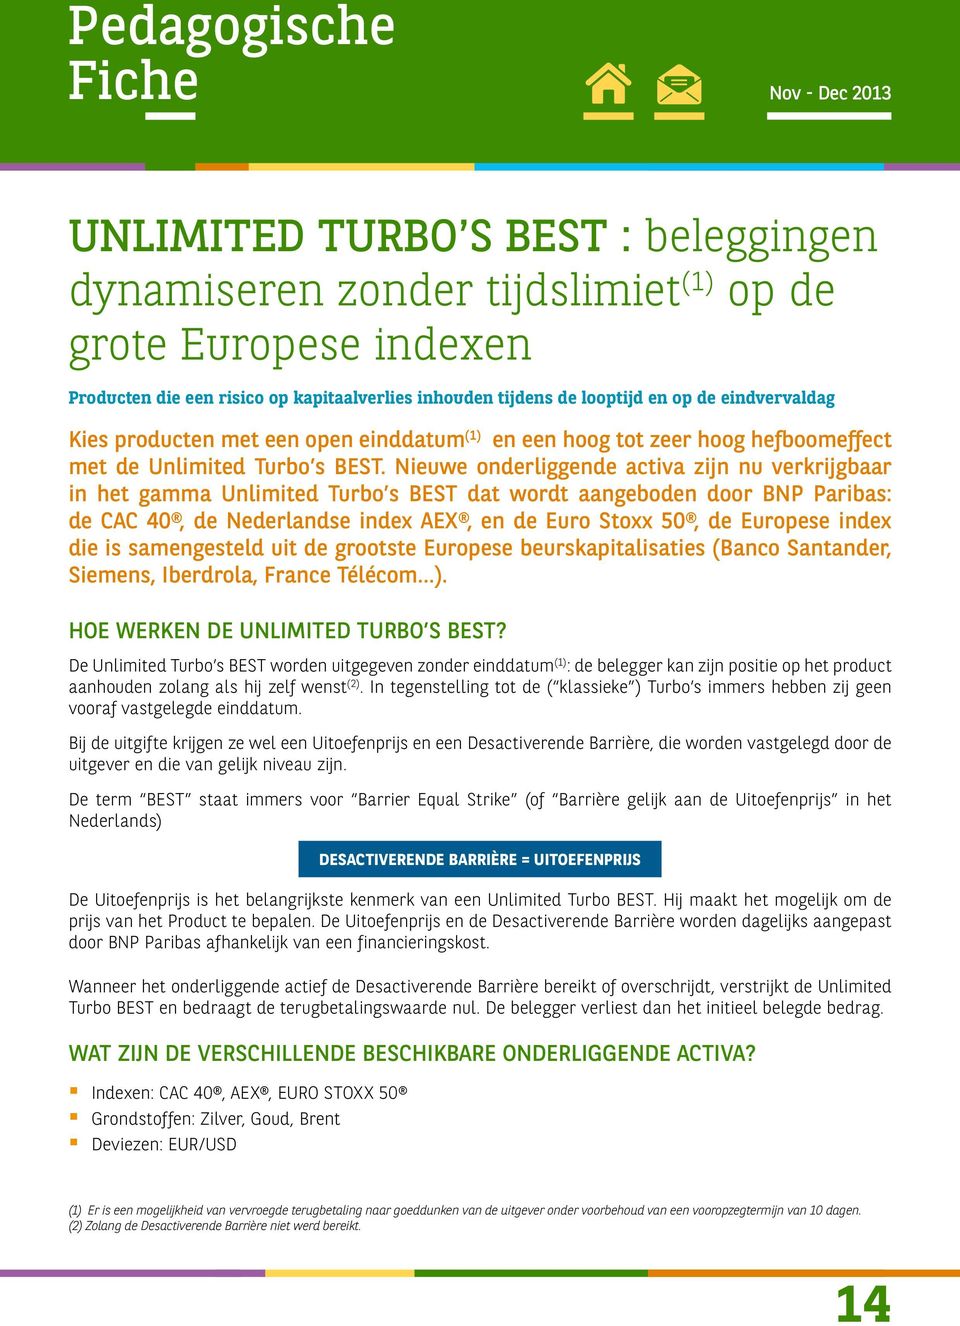 Nieuwe onderliggende activa zijn nu verkrijgbaar in het gamma Unlimited Turbo s BEST dat wordt aangeboden door BNP Paribas: de CAC 40, de Nederlandse index AEX, en de Euro Stoxx 50, de Europese index